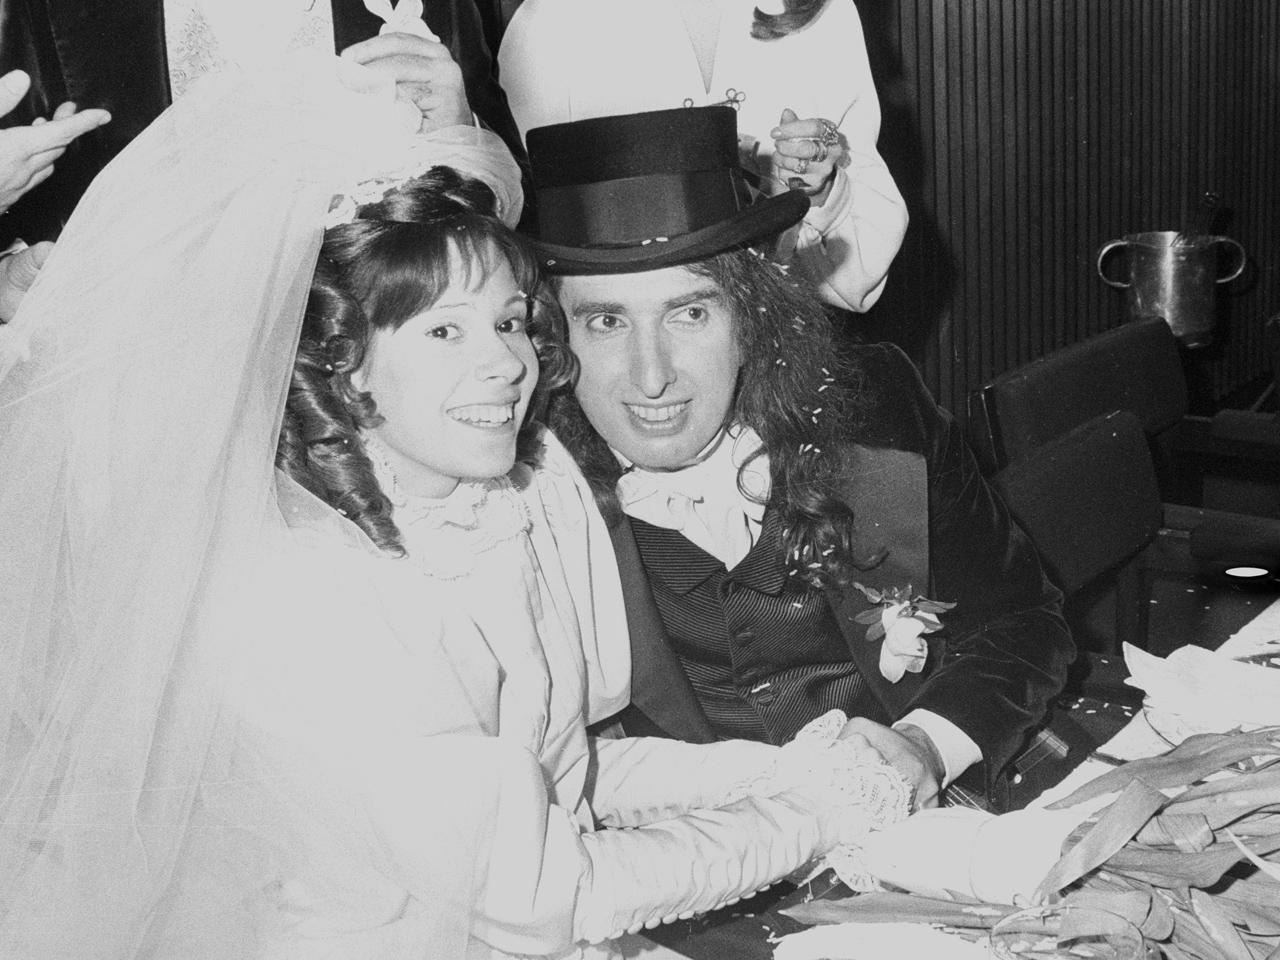 Tiny Tim marries Miss Vicki - News